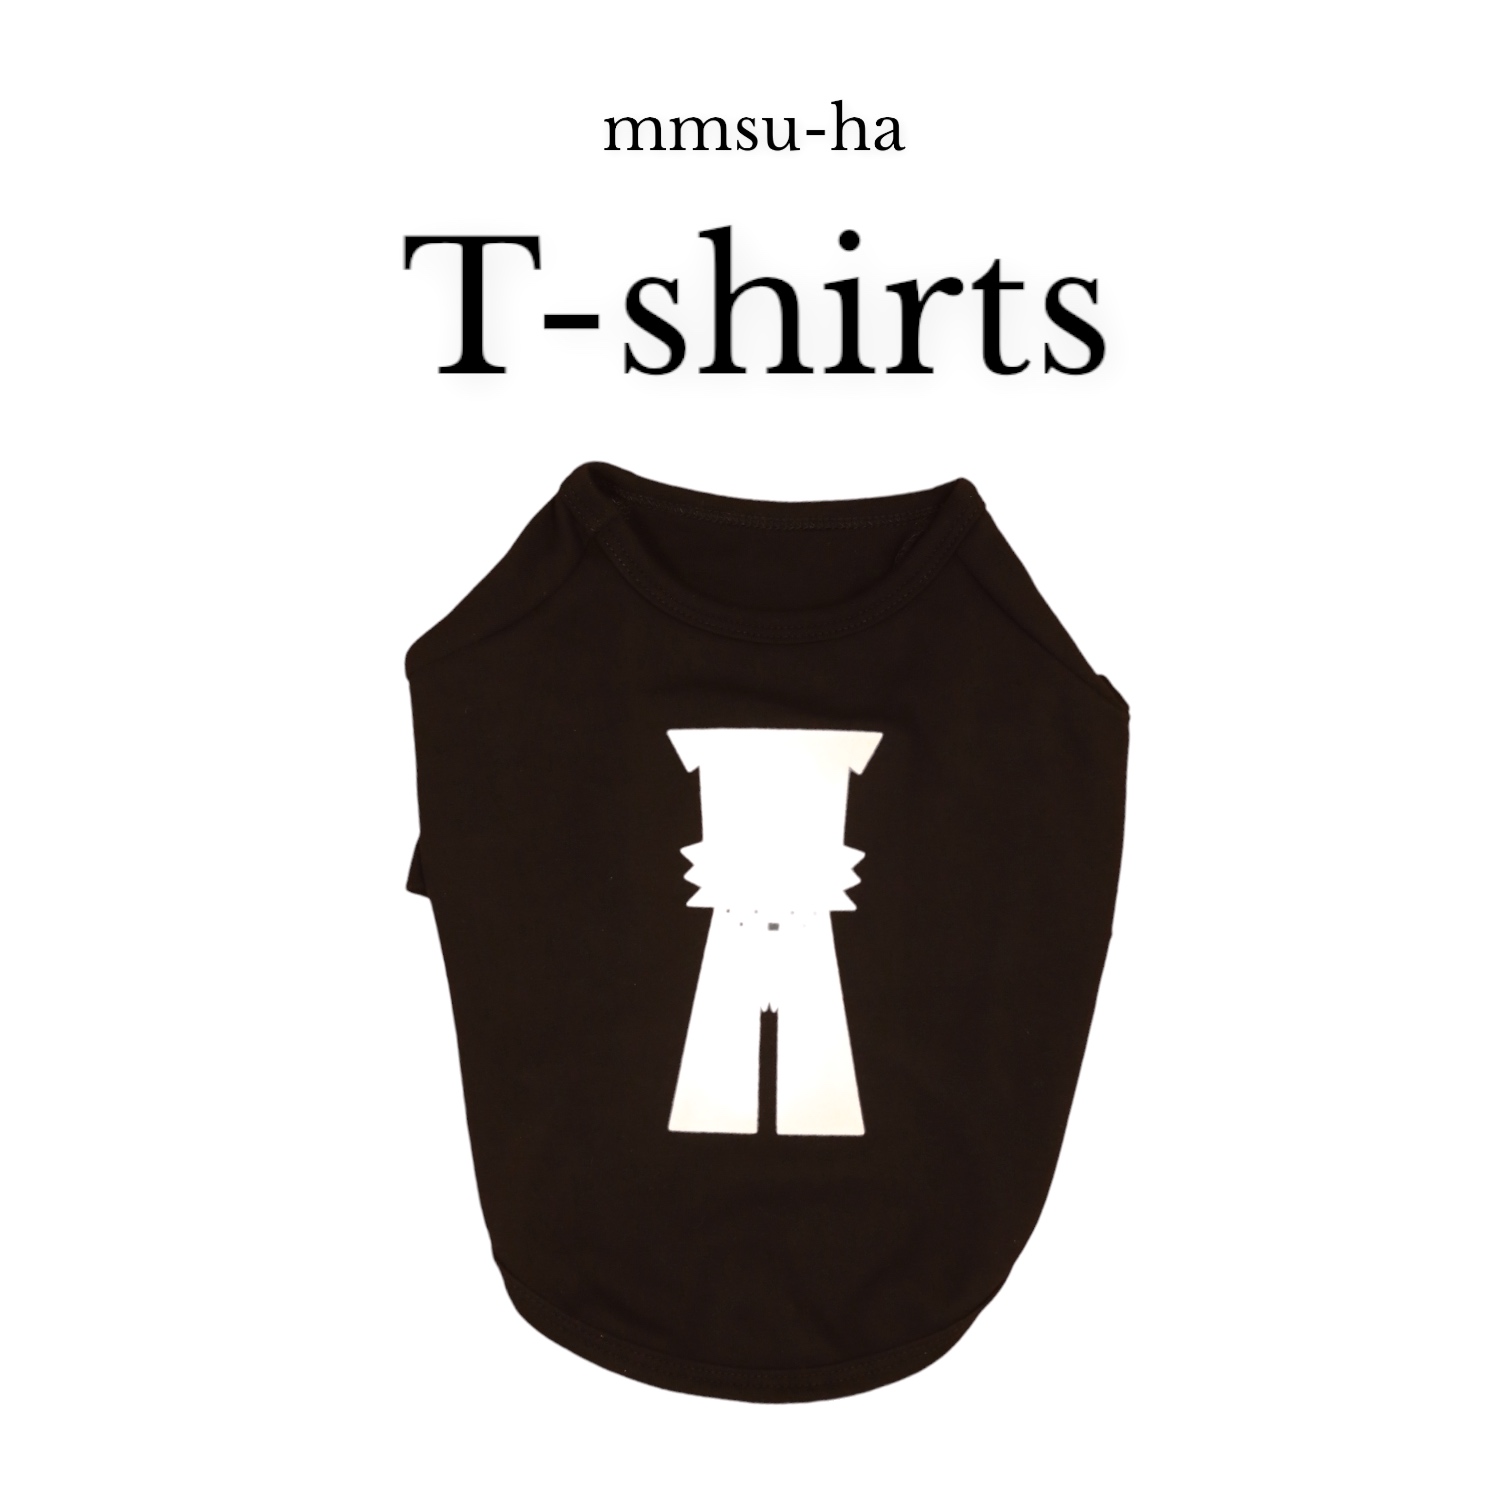 【犬服】su-ha kun Tシャツ/ブラック(Mサイズ)【mmsu-ha】